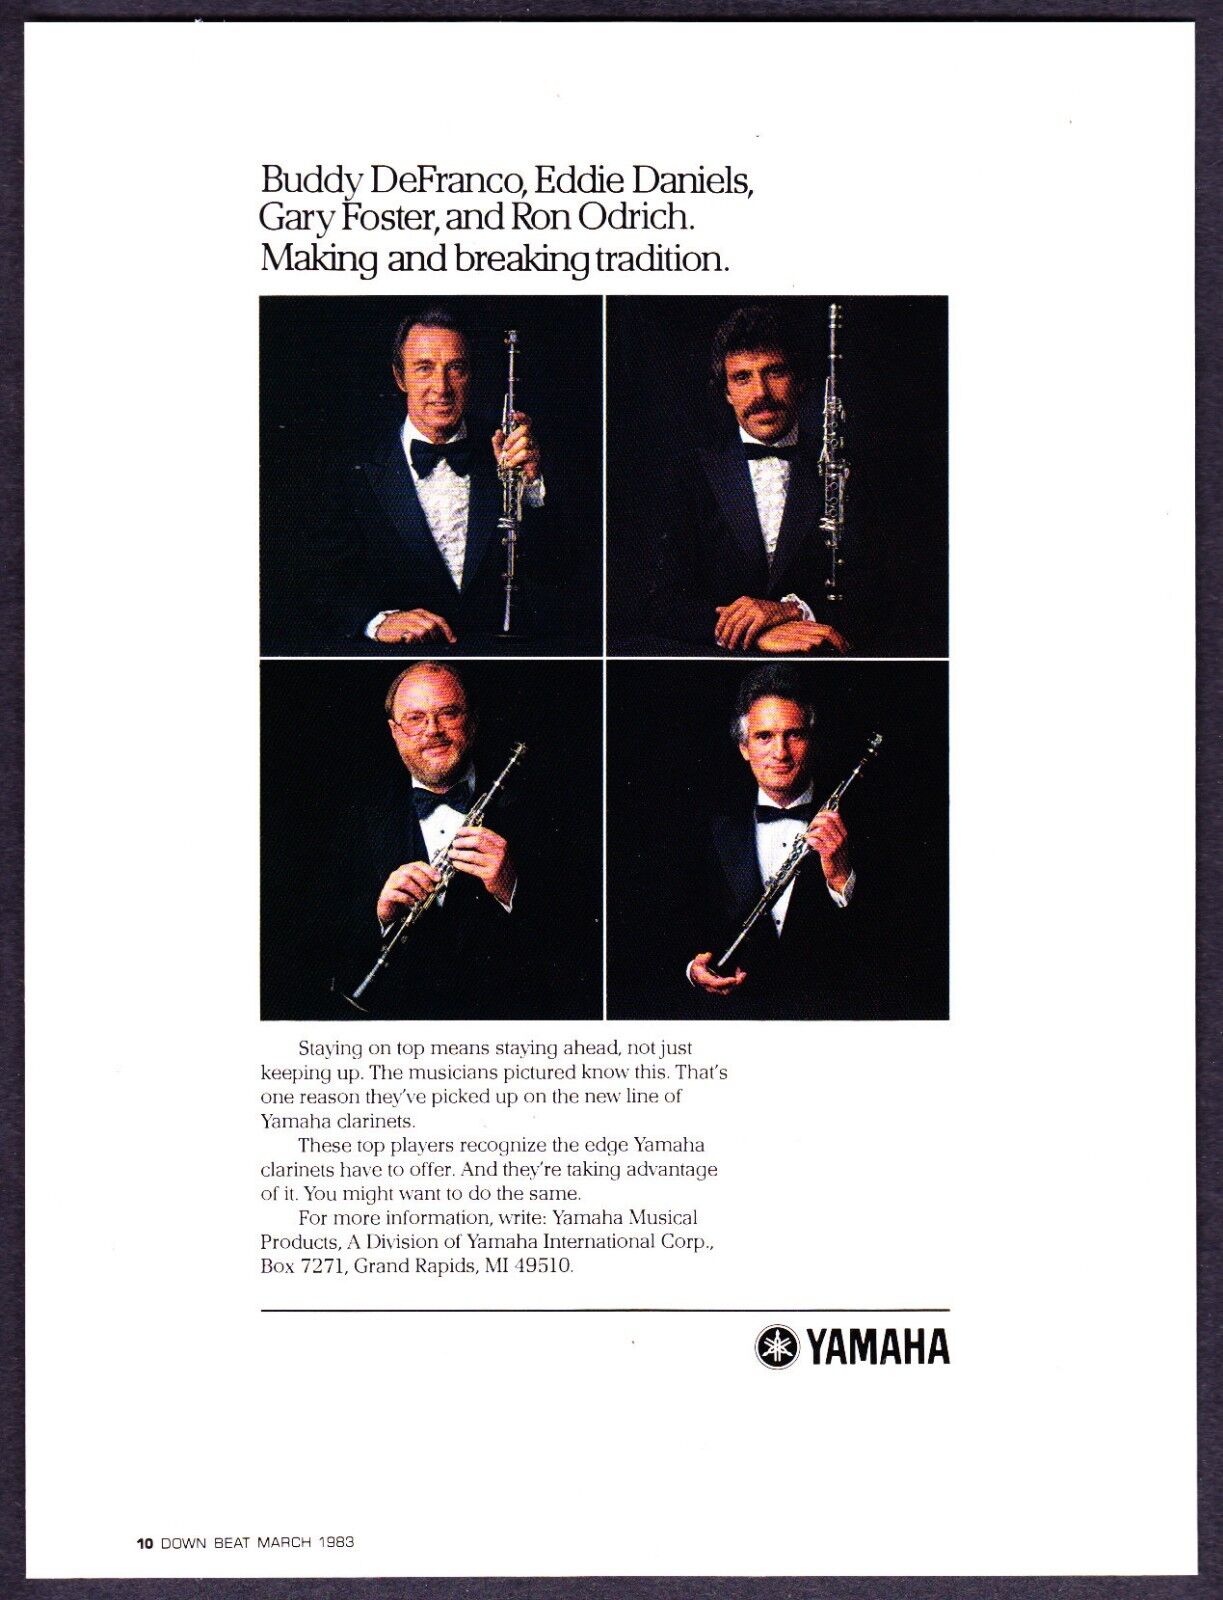 1983 Buddy DeFranco E. Daniels G. Foster R. Odrich Yamaha Clarinet print ad